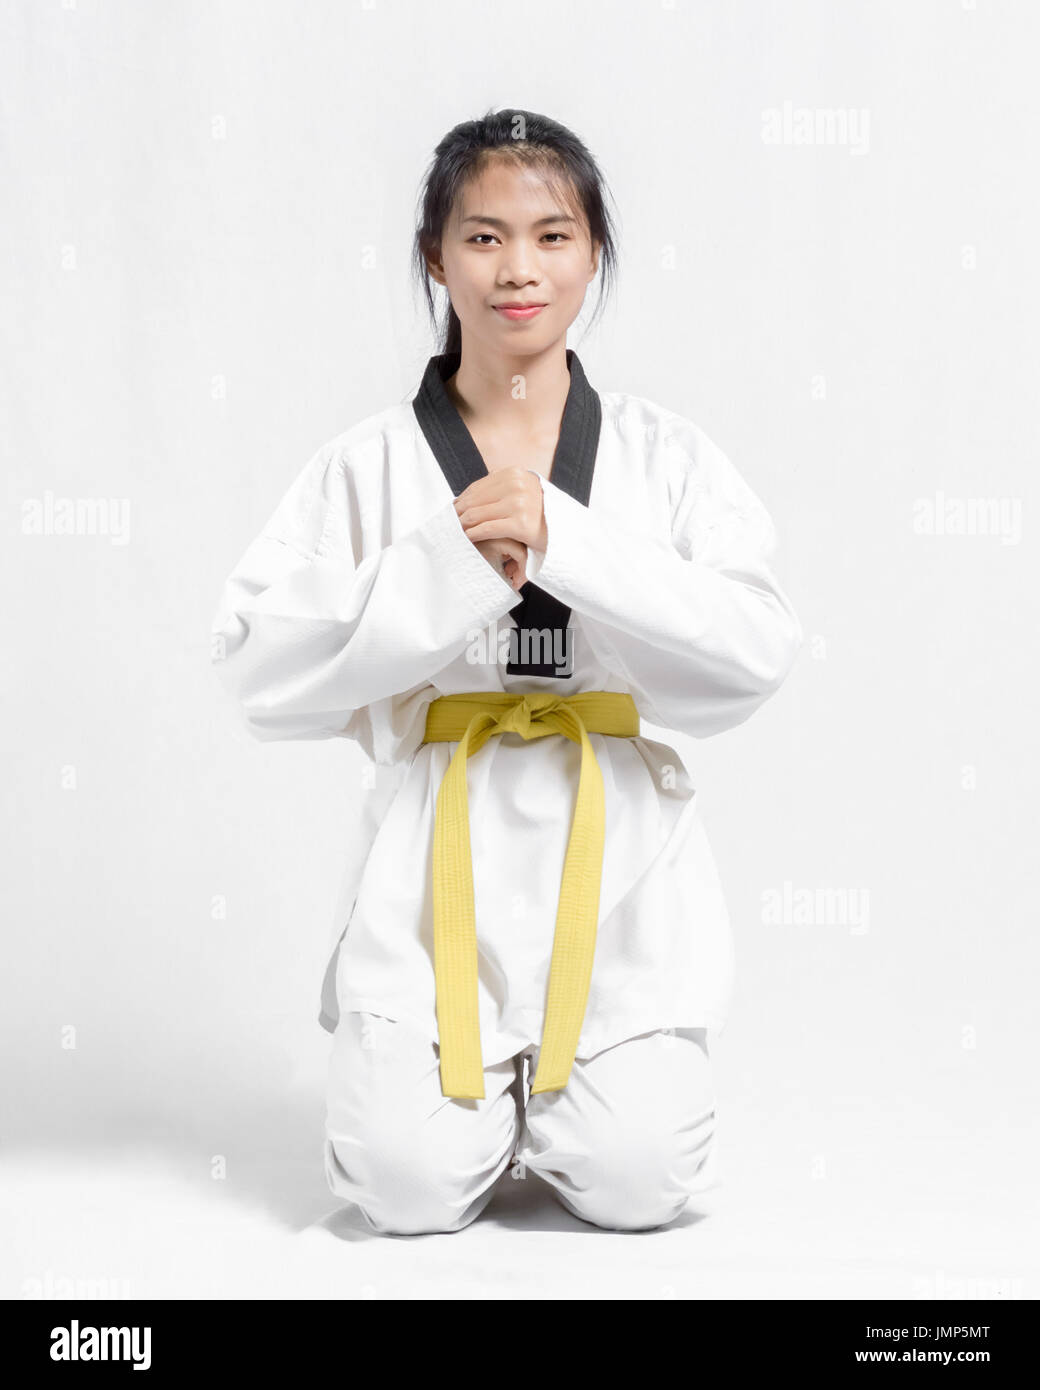 Portrait d'une belle femme asiatique avec le taekwondo ceinture jaune.  Isolé sur fond gris Photo Stock - Alamy